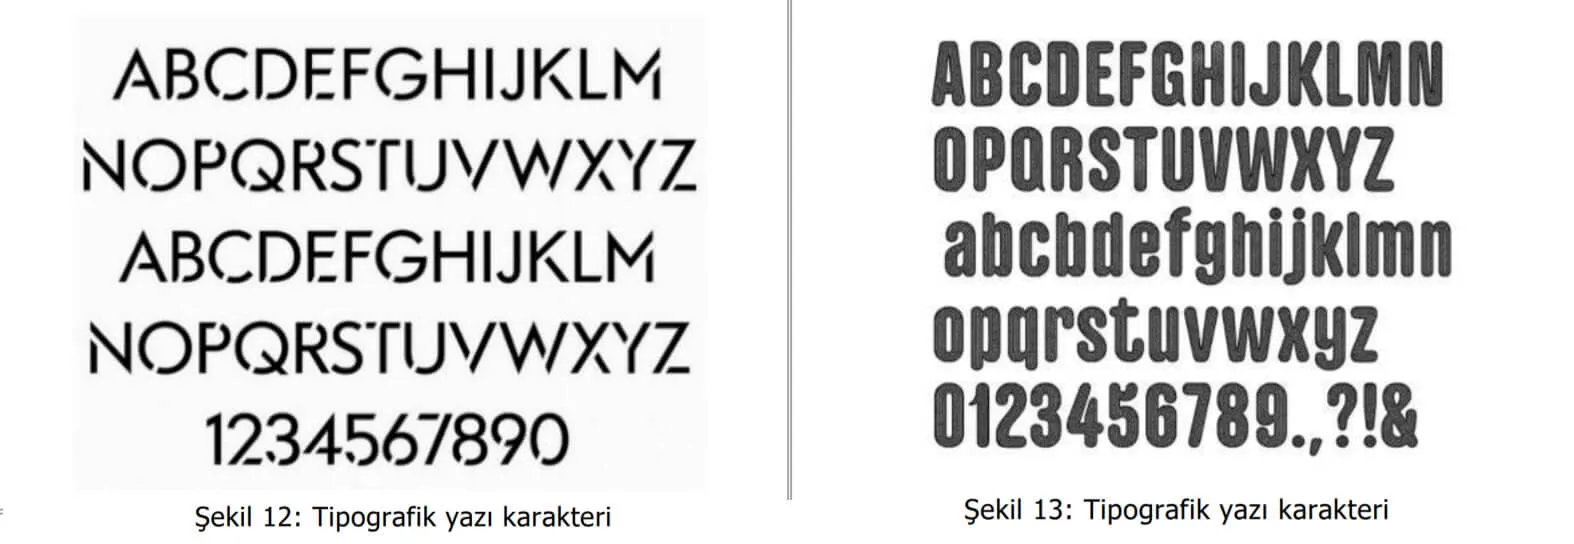 tipografik yazı karakter örnekleri-Patent Alma